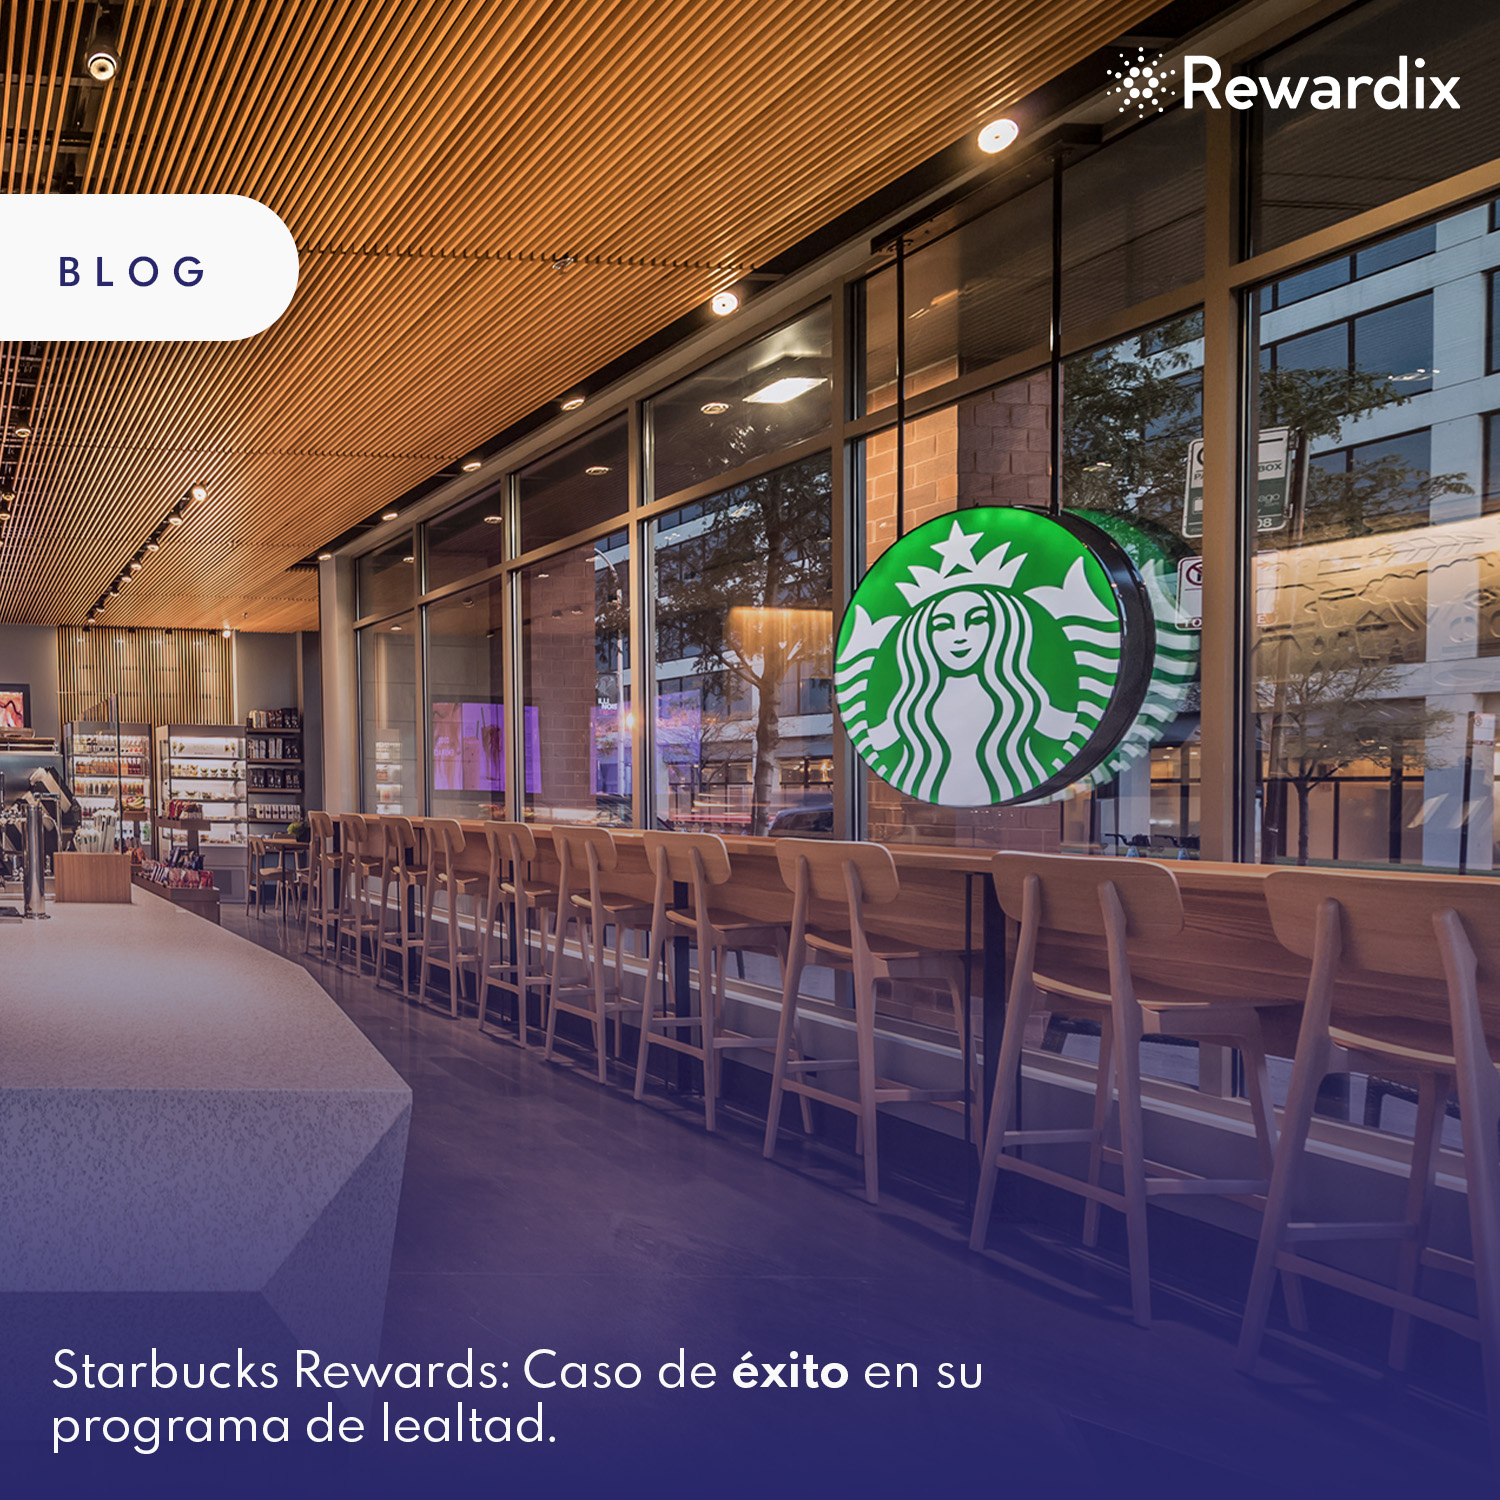 Starbucks Rewards: Caso de Éxito en su Programa de Lealtad